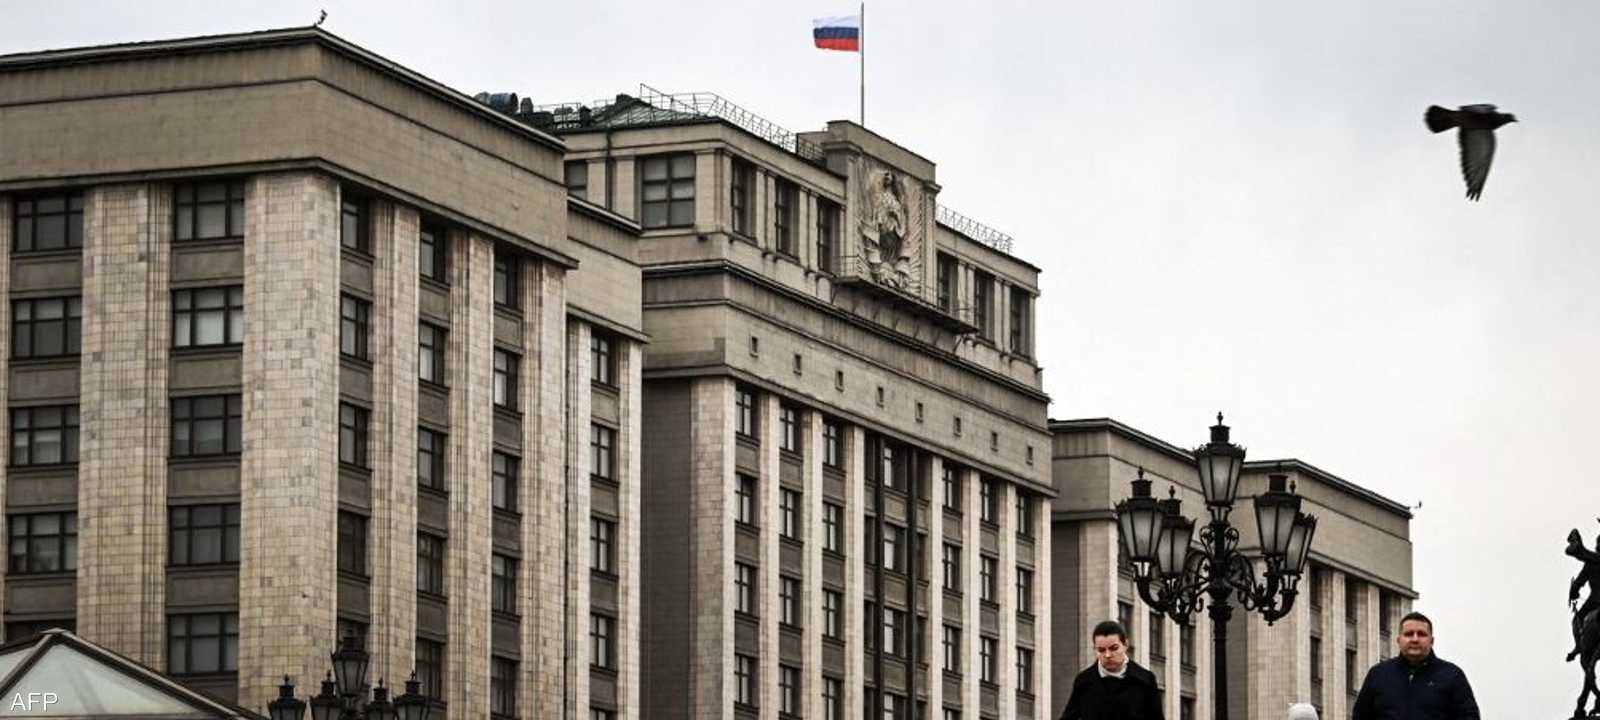 أرشيفية لمبنى البرلمان الروسي "الدوما"